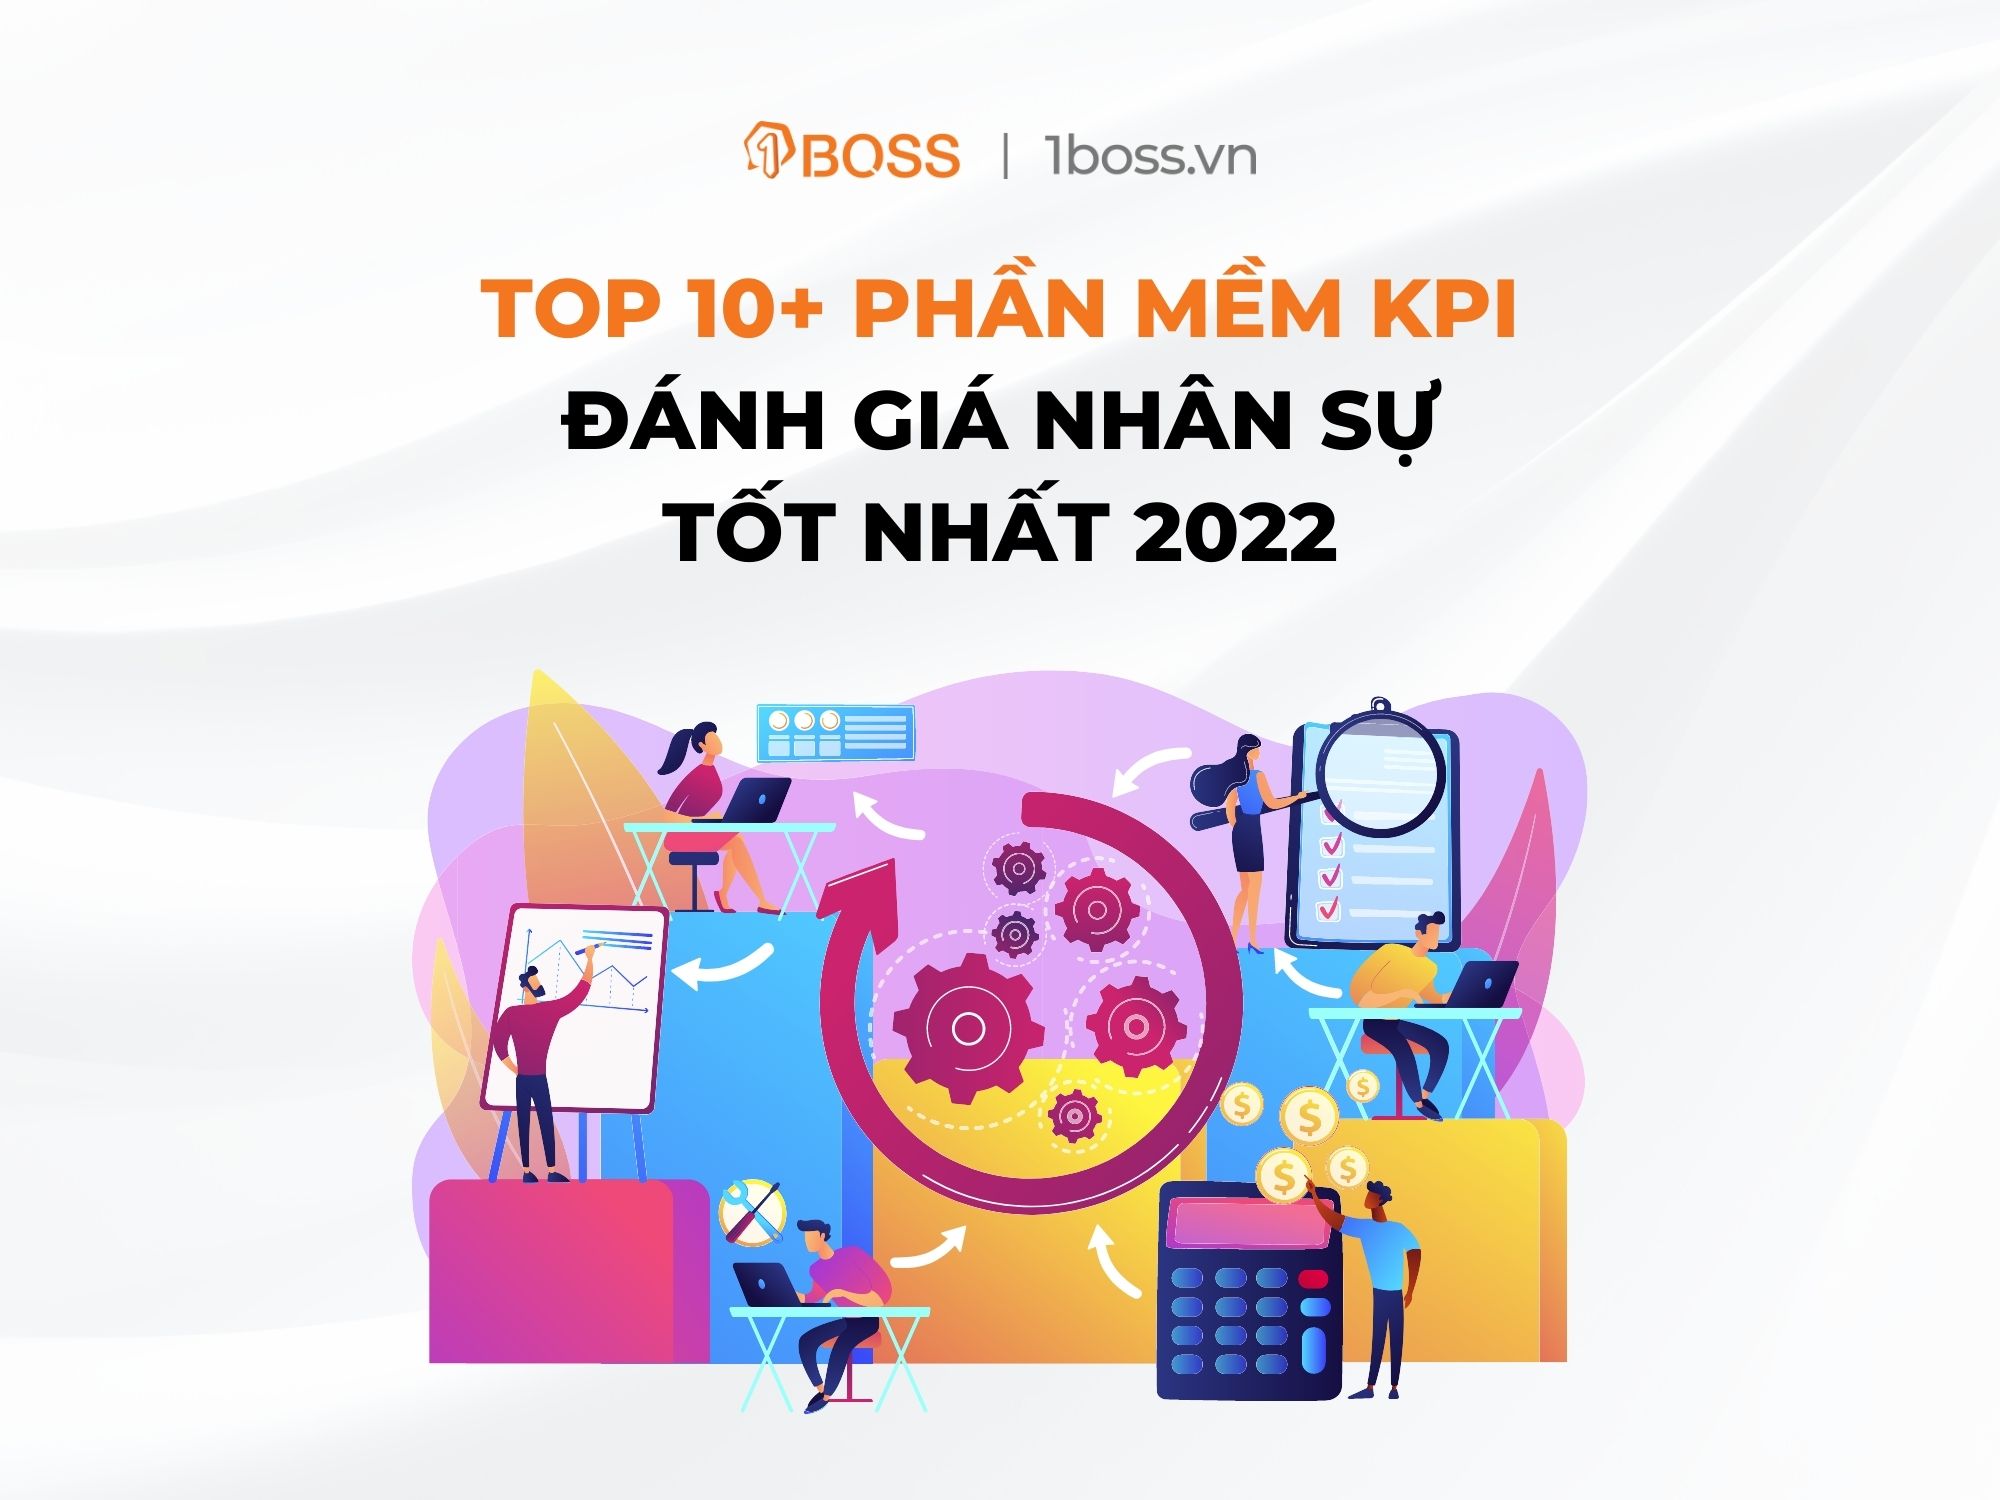 Top 10+ phần mềm KPI đánh giá nhân sự tốt nhất 2022